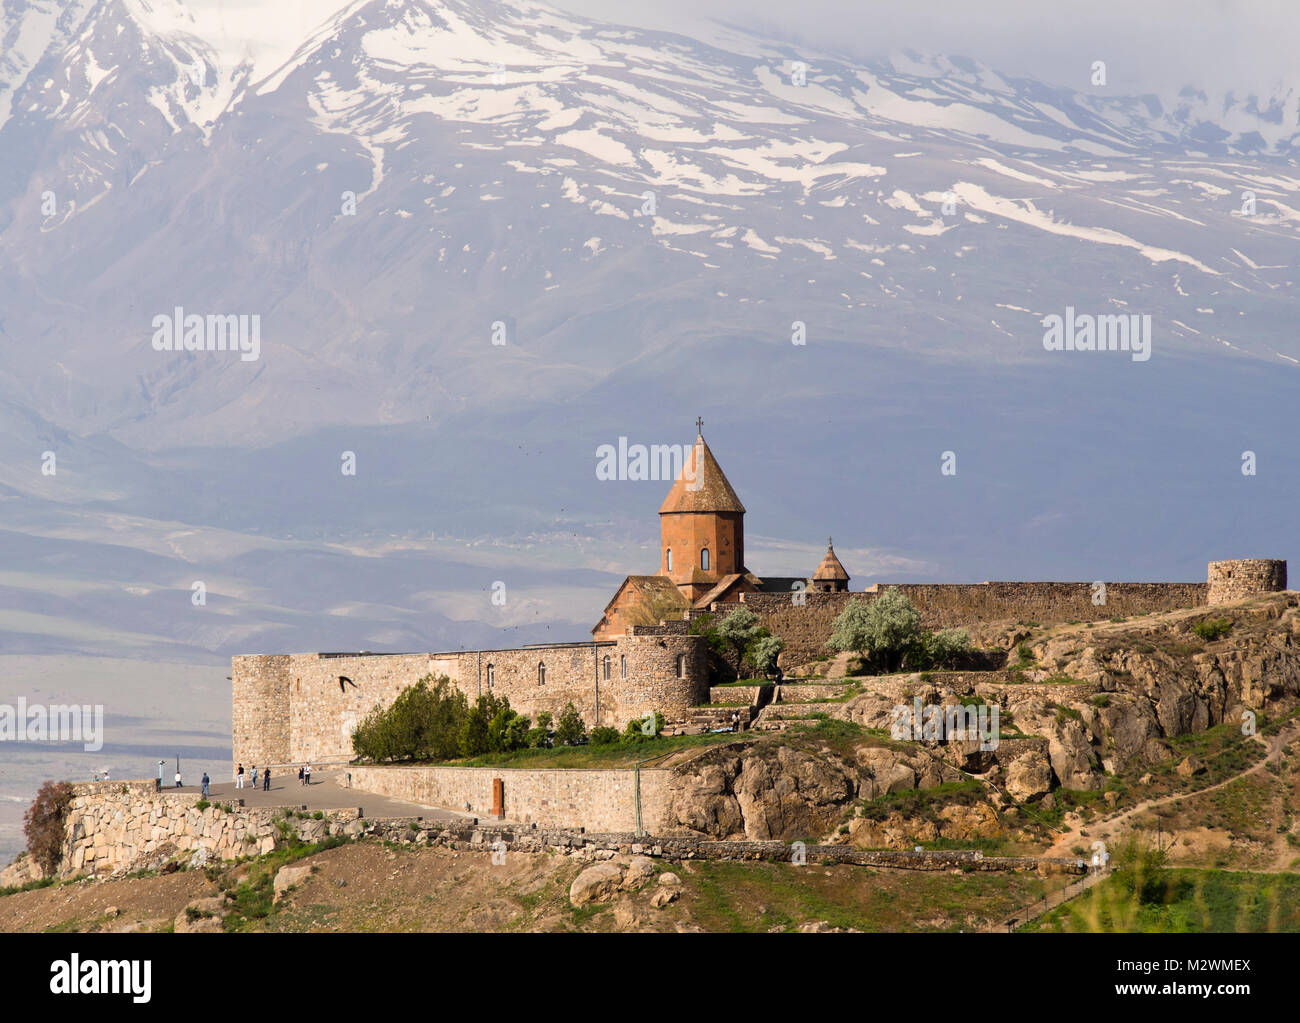 Il Khor Virap monastero in Armenia con le pendici del Monte Ararat dietro, una popolare e destinazione turistica pittoresca sul confine turco Foto Stock